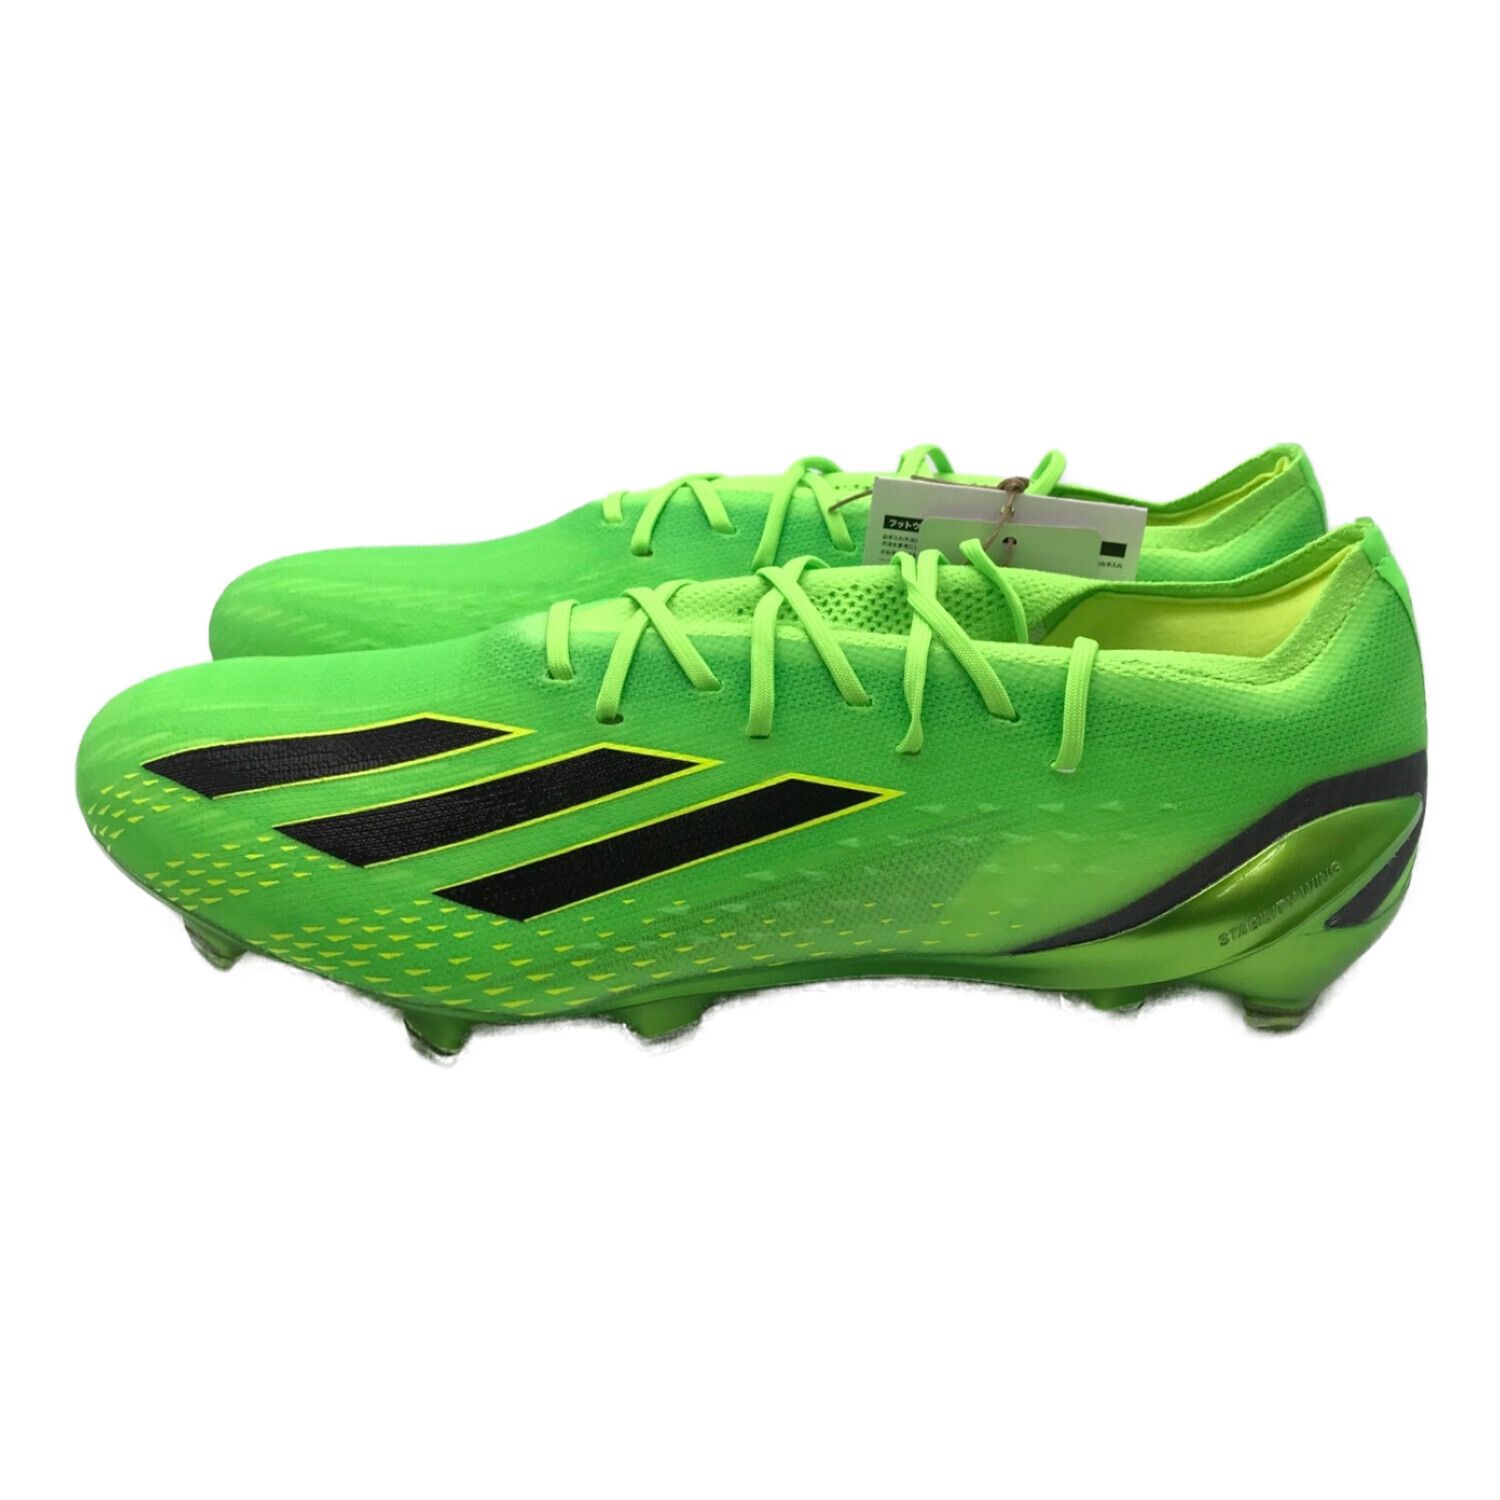 adidas (アディダス) サッカースパイク メンズ SIZE 27.5cm グリーン